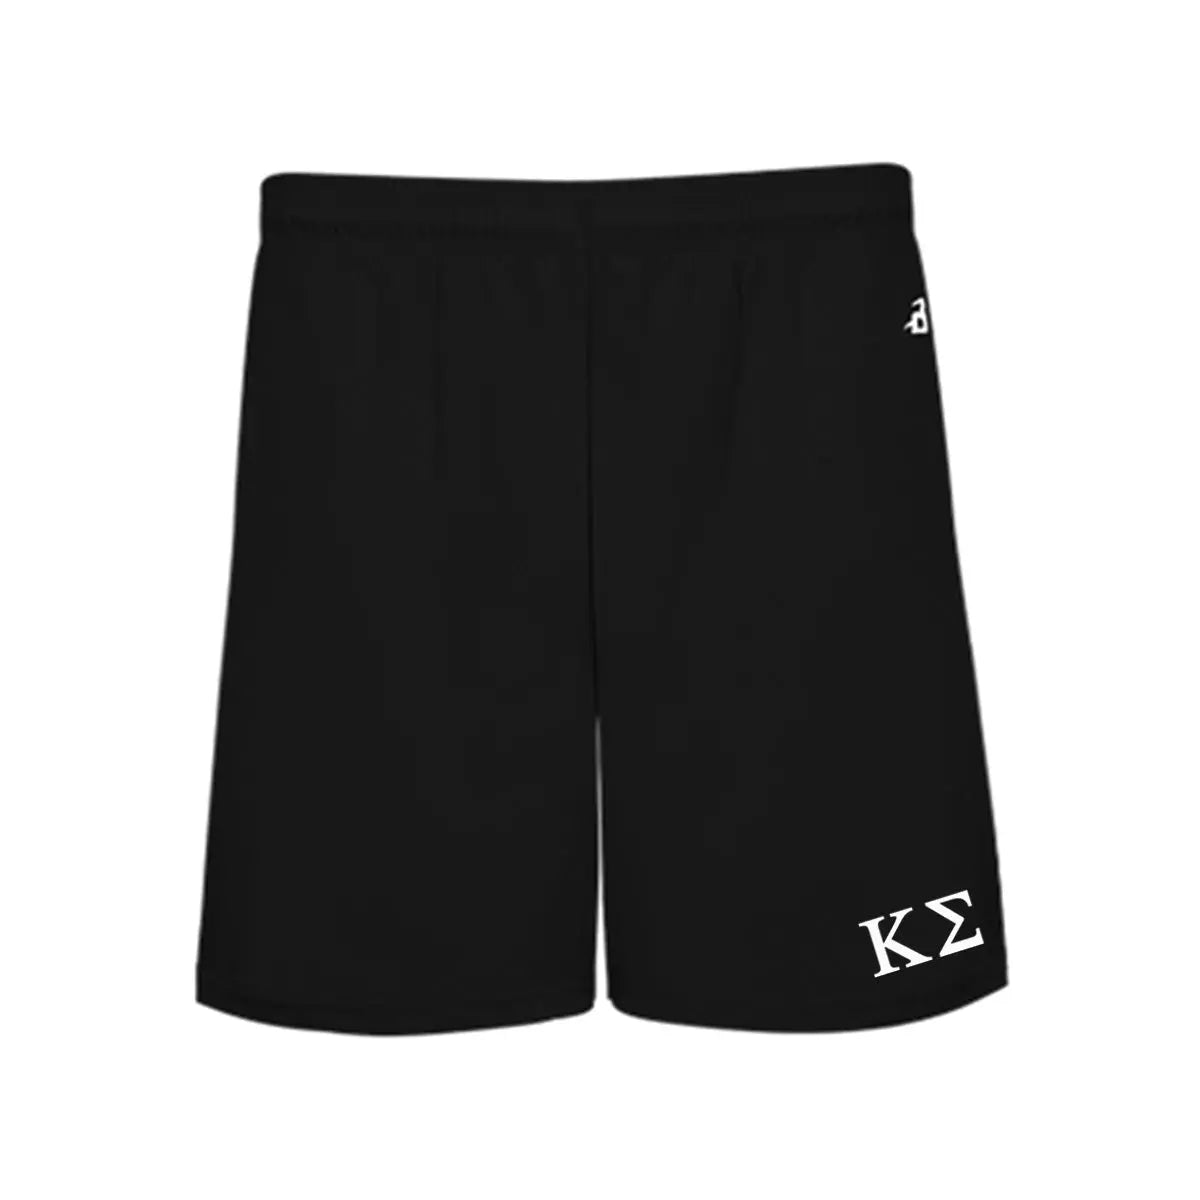 New! Kappa Sig 5" Black Shorts Kappa Sigma